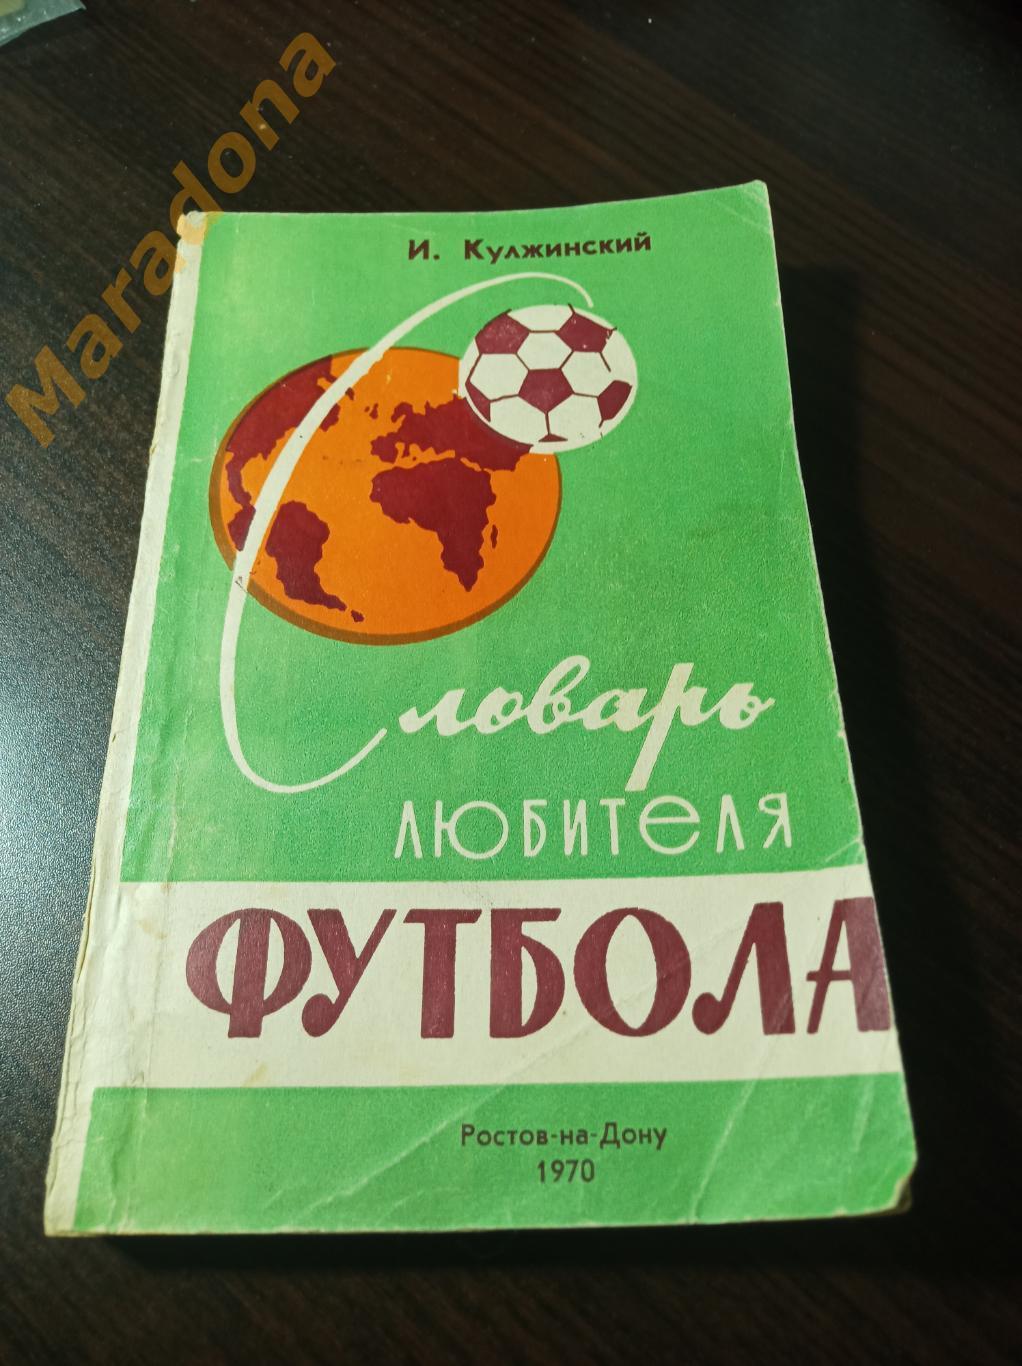 И. Кулжинский Словарь любителя футбола 1957 Ростов-на-Дону